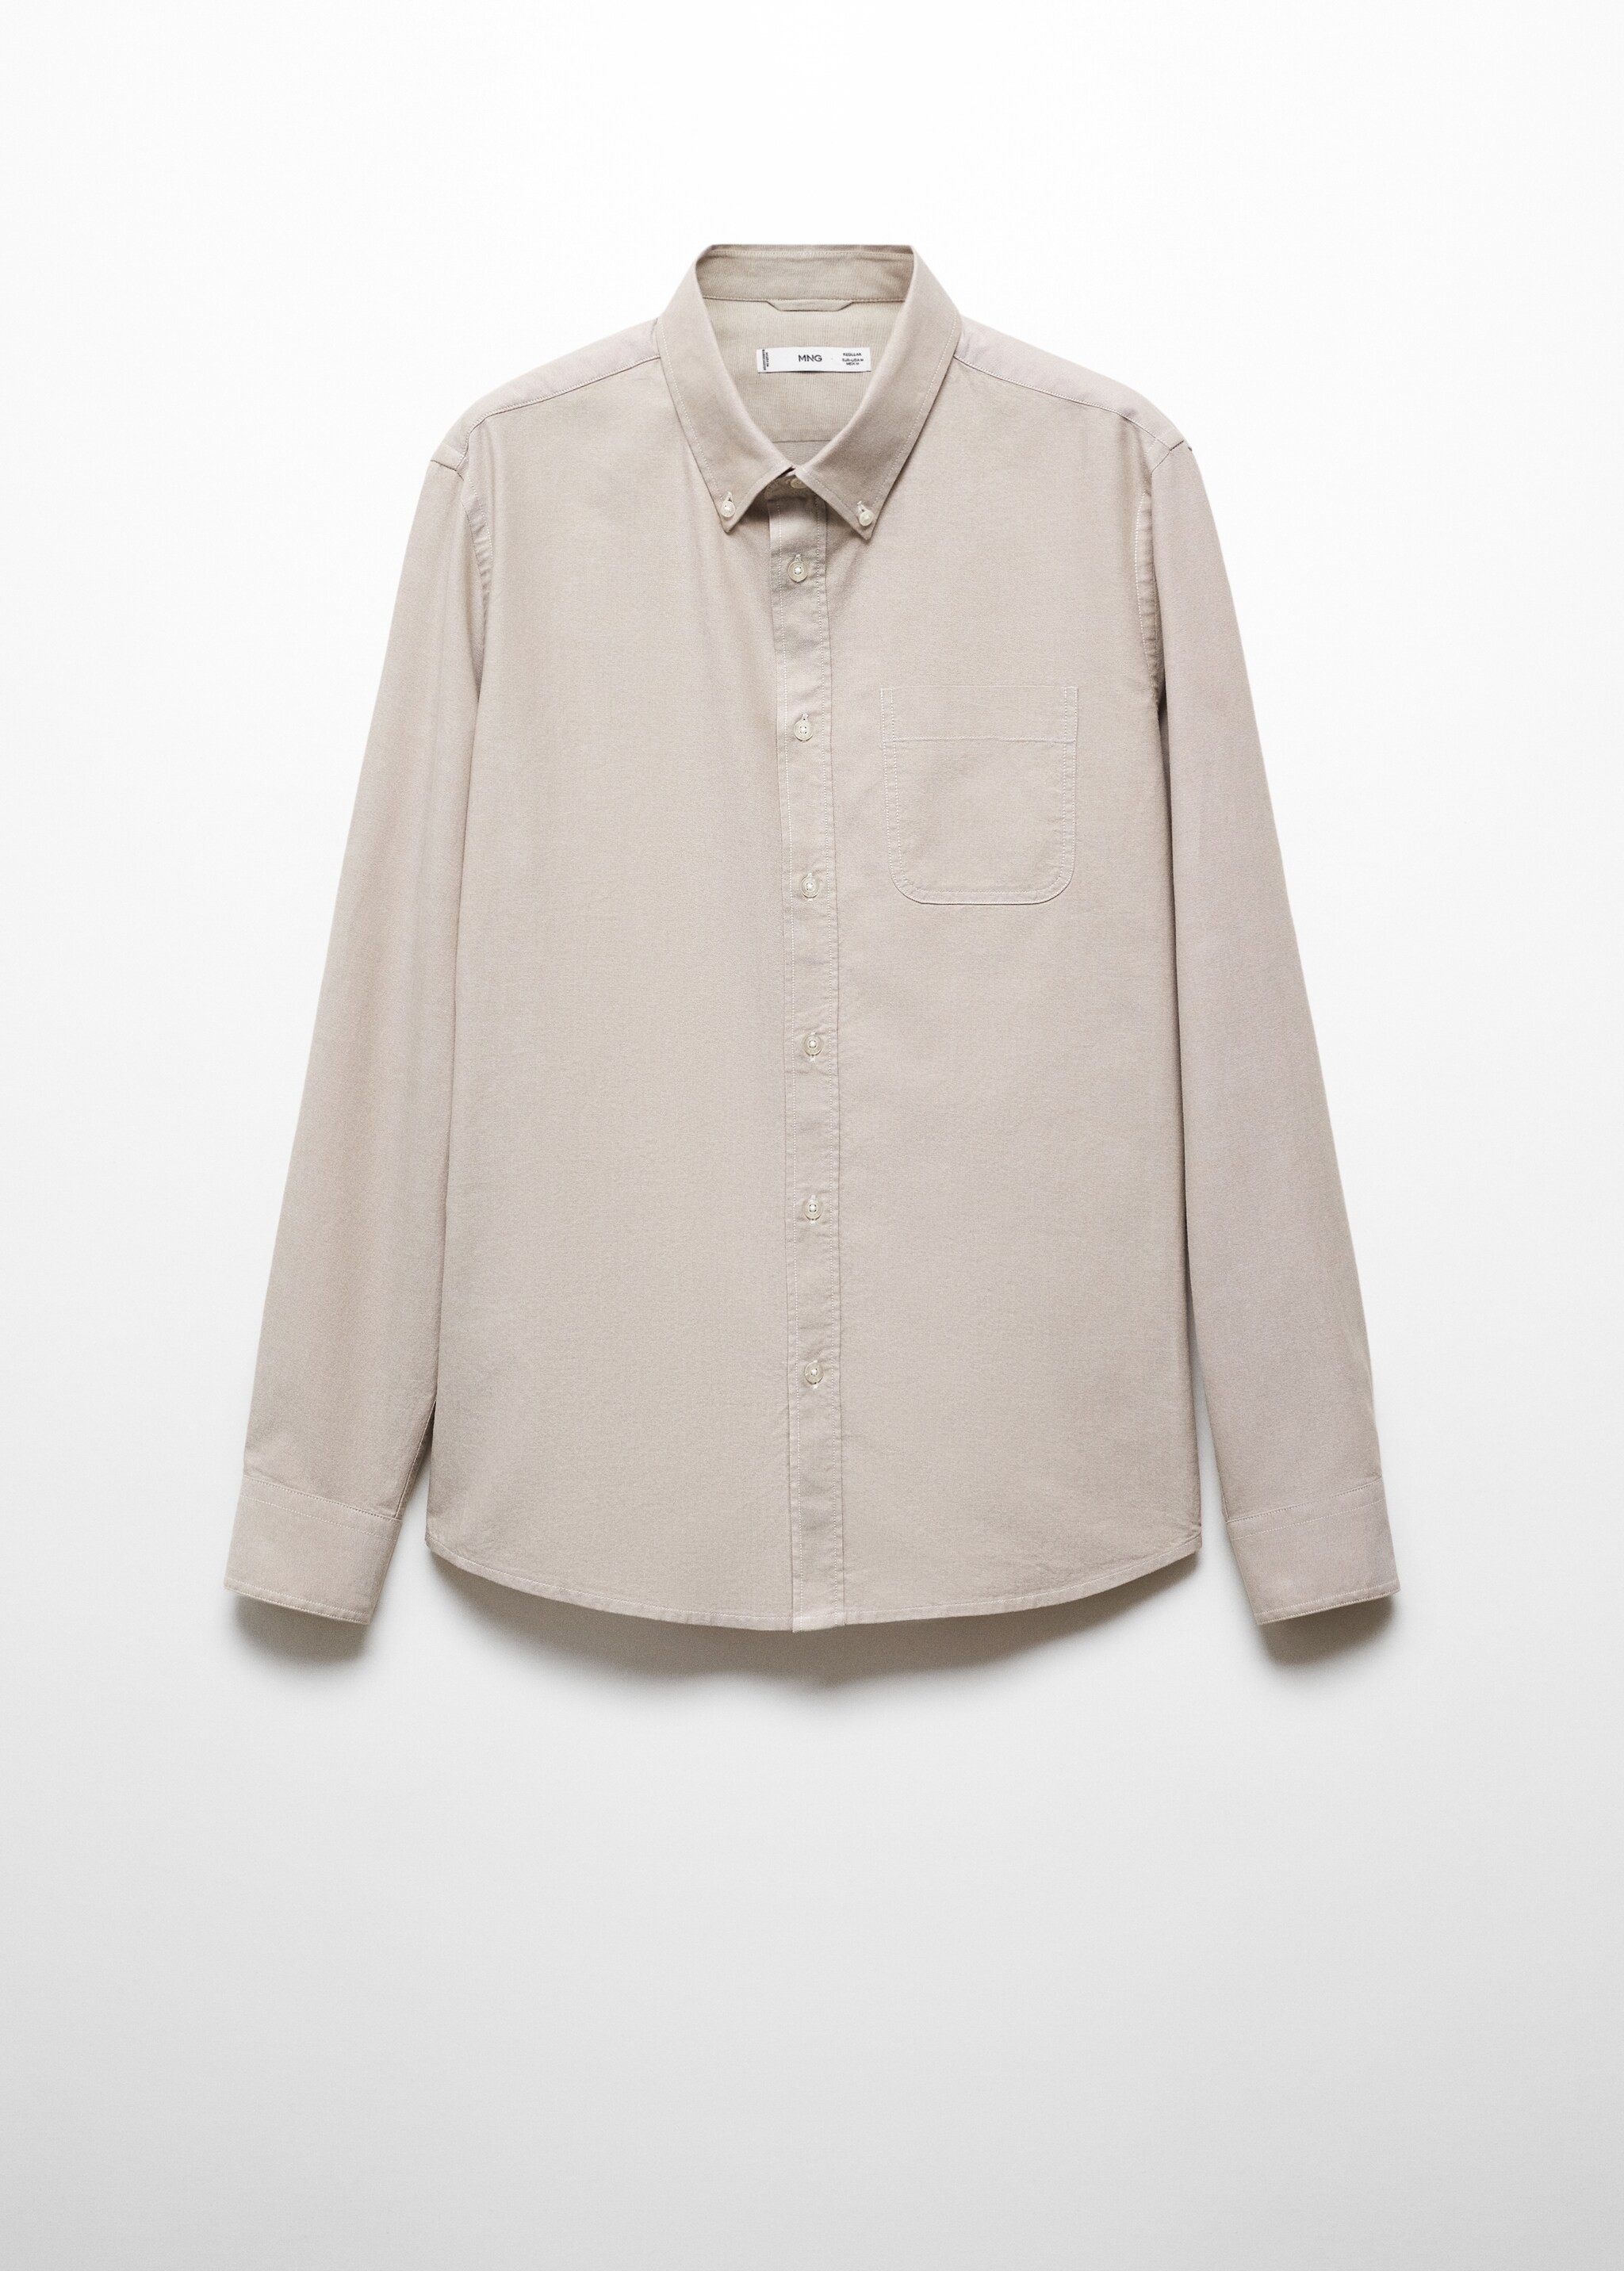 Camisa Oxford regular fit de algodão - Artigo sem modelo